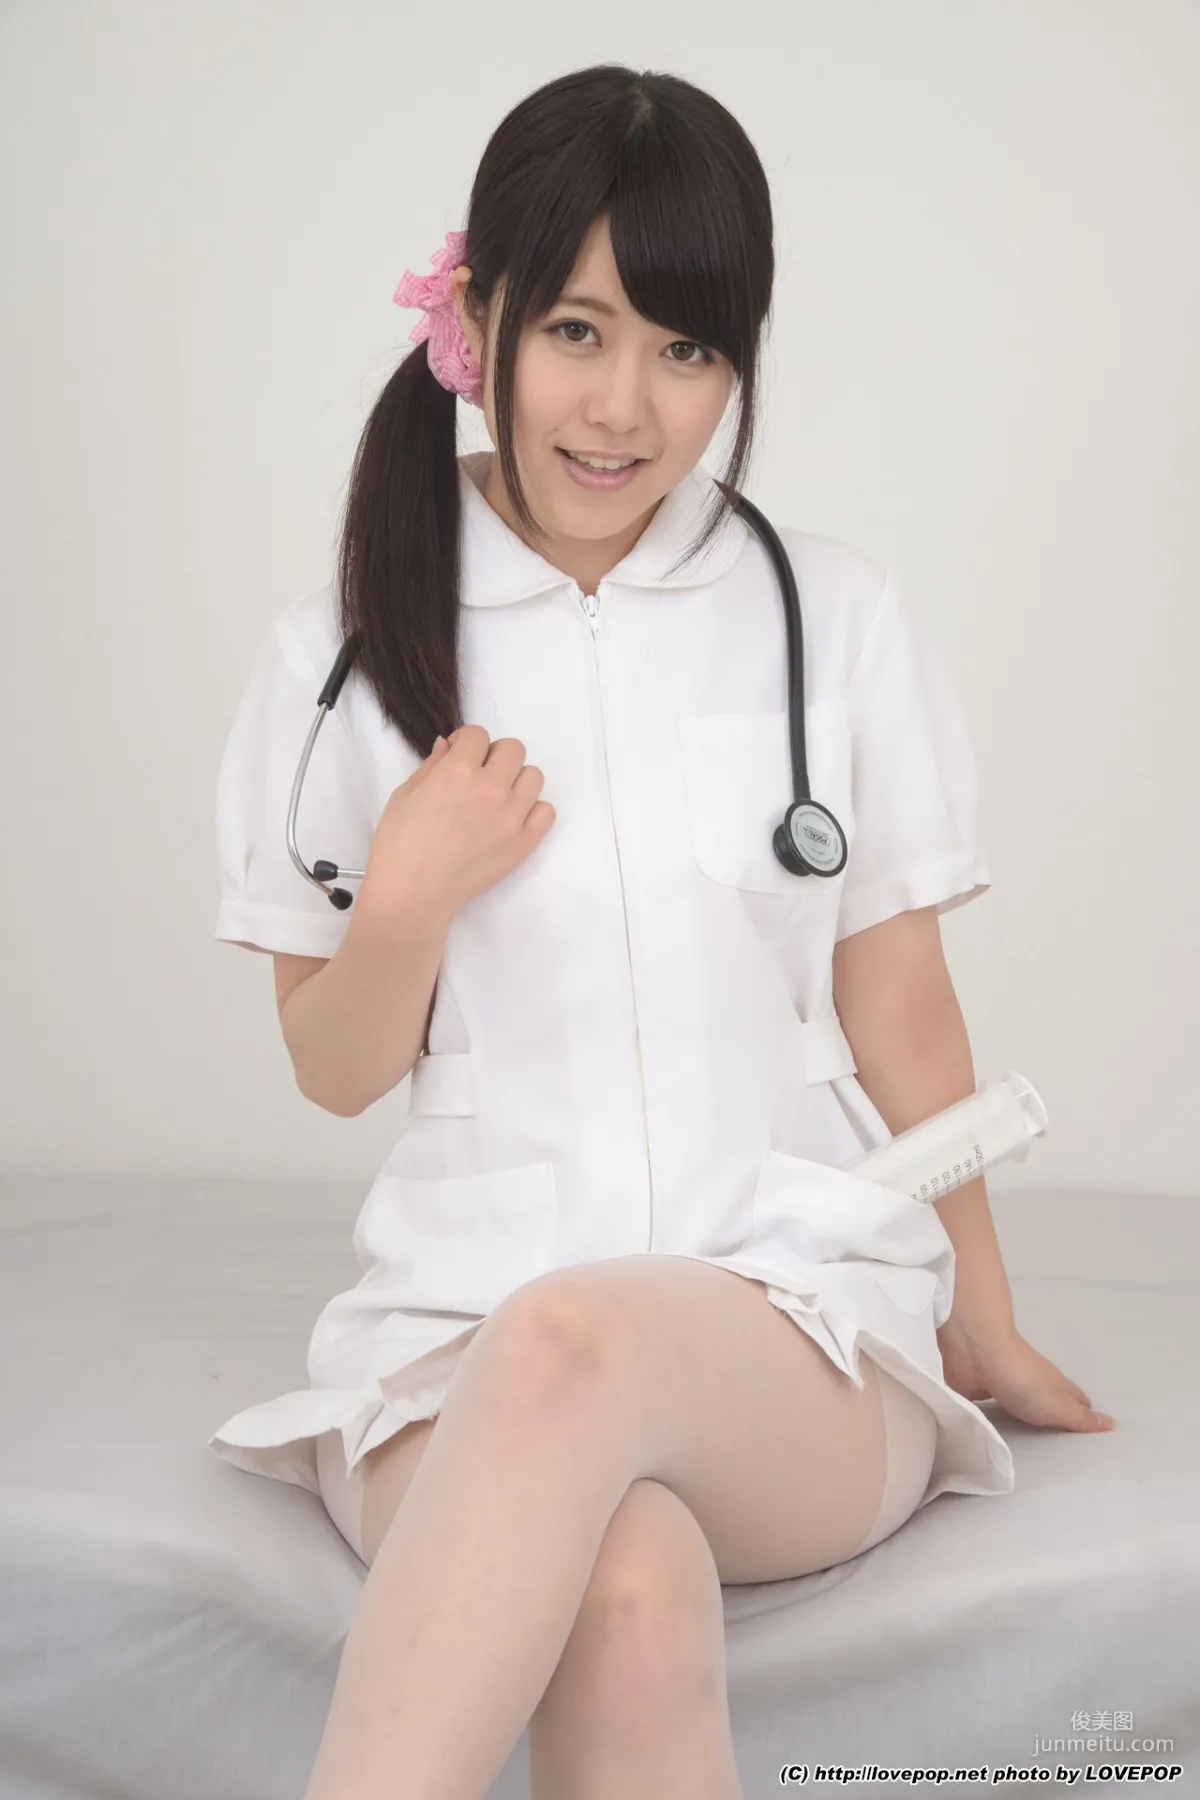 涼海みさ《Charming nurse ! - PPV》 [LOVEPOP] 写真集2